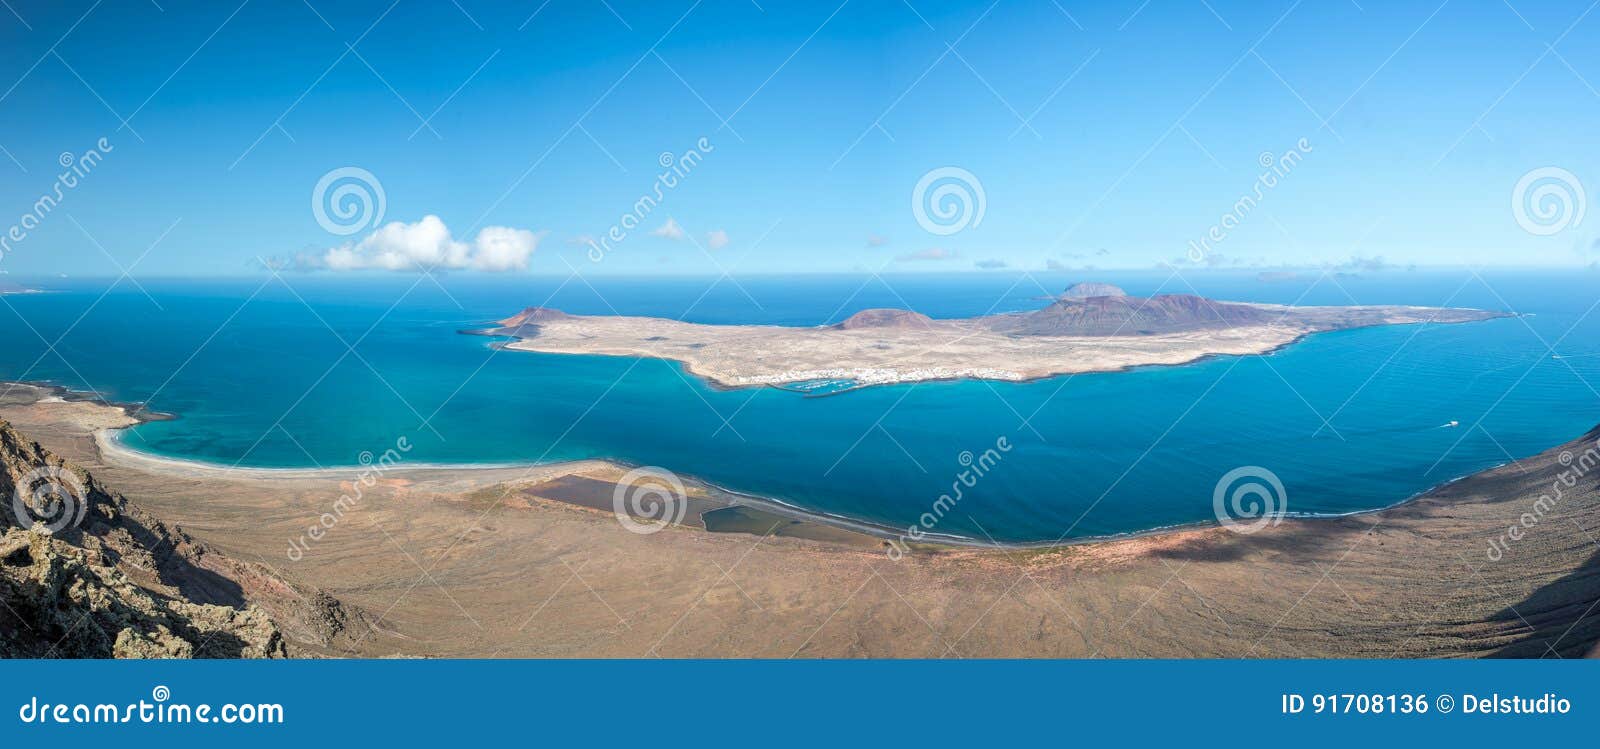 panorama of la graciosa island, aerial view from mirador del rio in lanzarote, canary islands spain